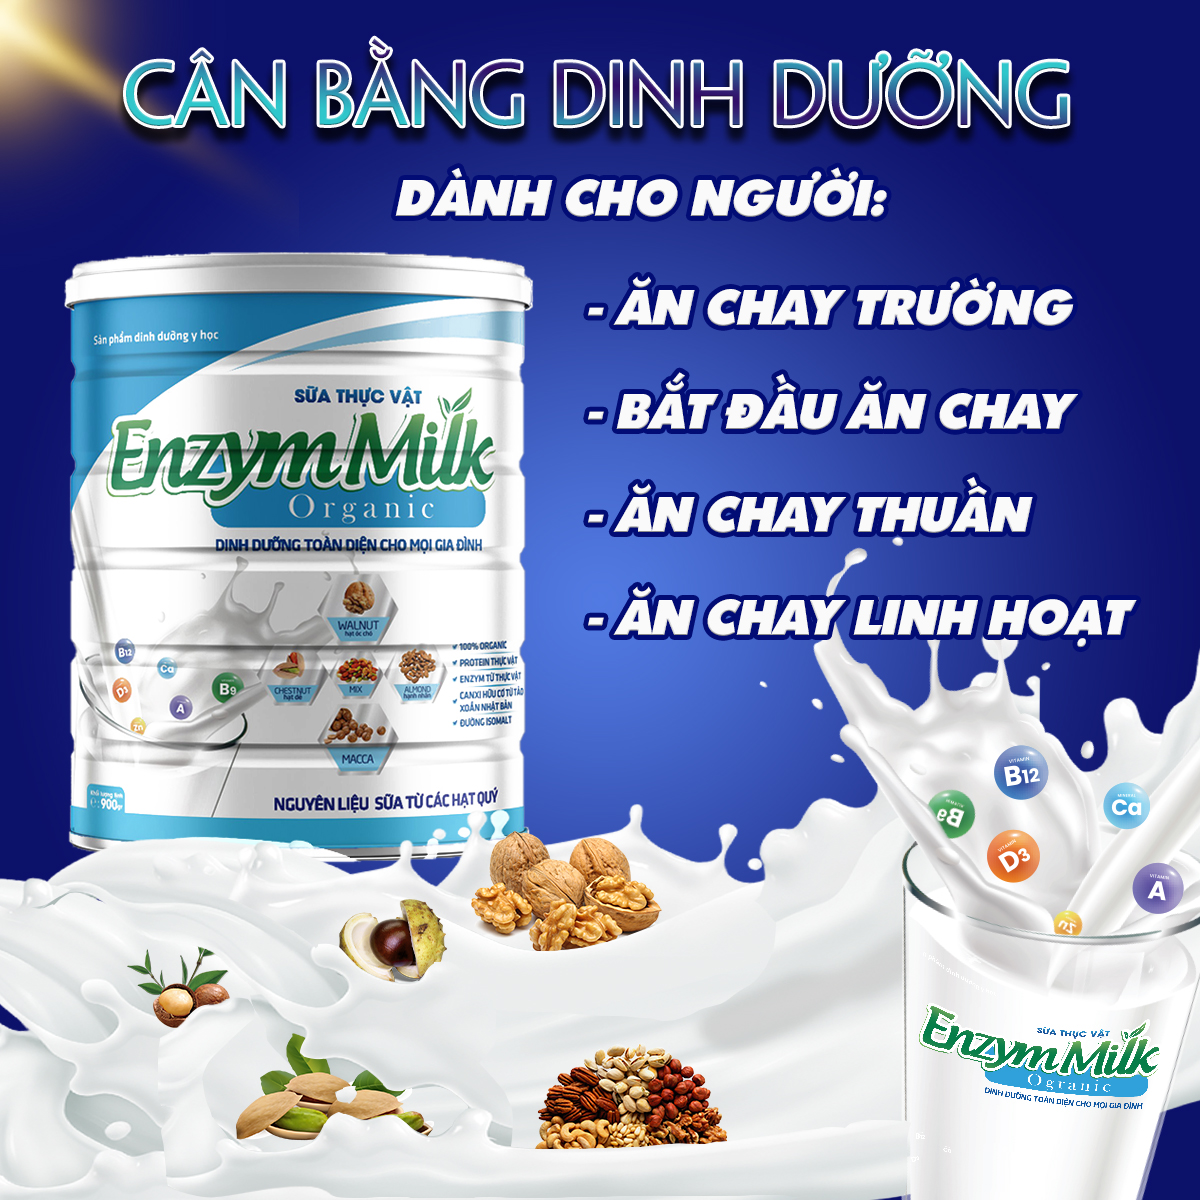 Mua 2+1, 5+3 Sữa thực vật Enzym Milk Organic dành cho người ăn chay, ăn